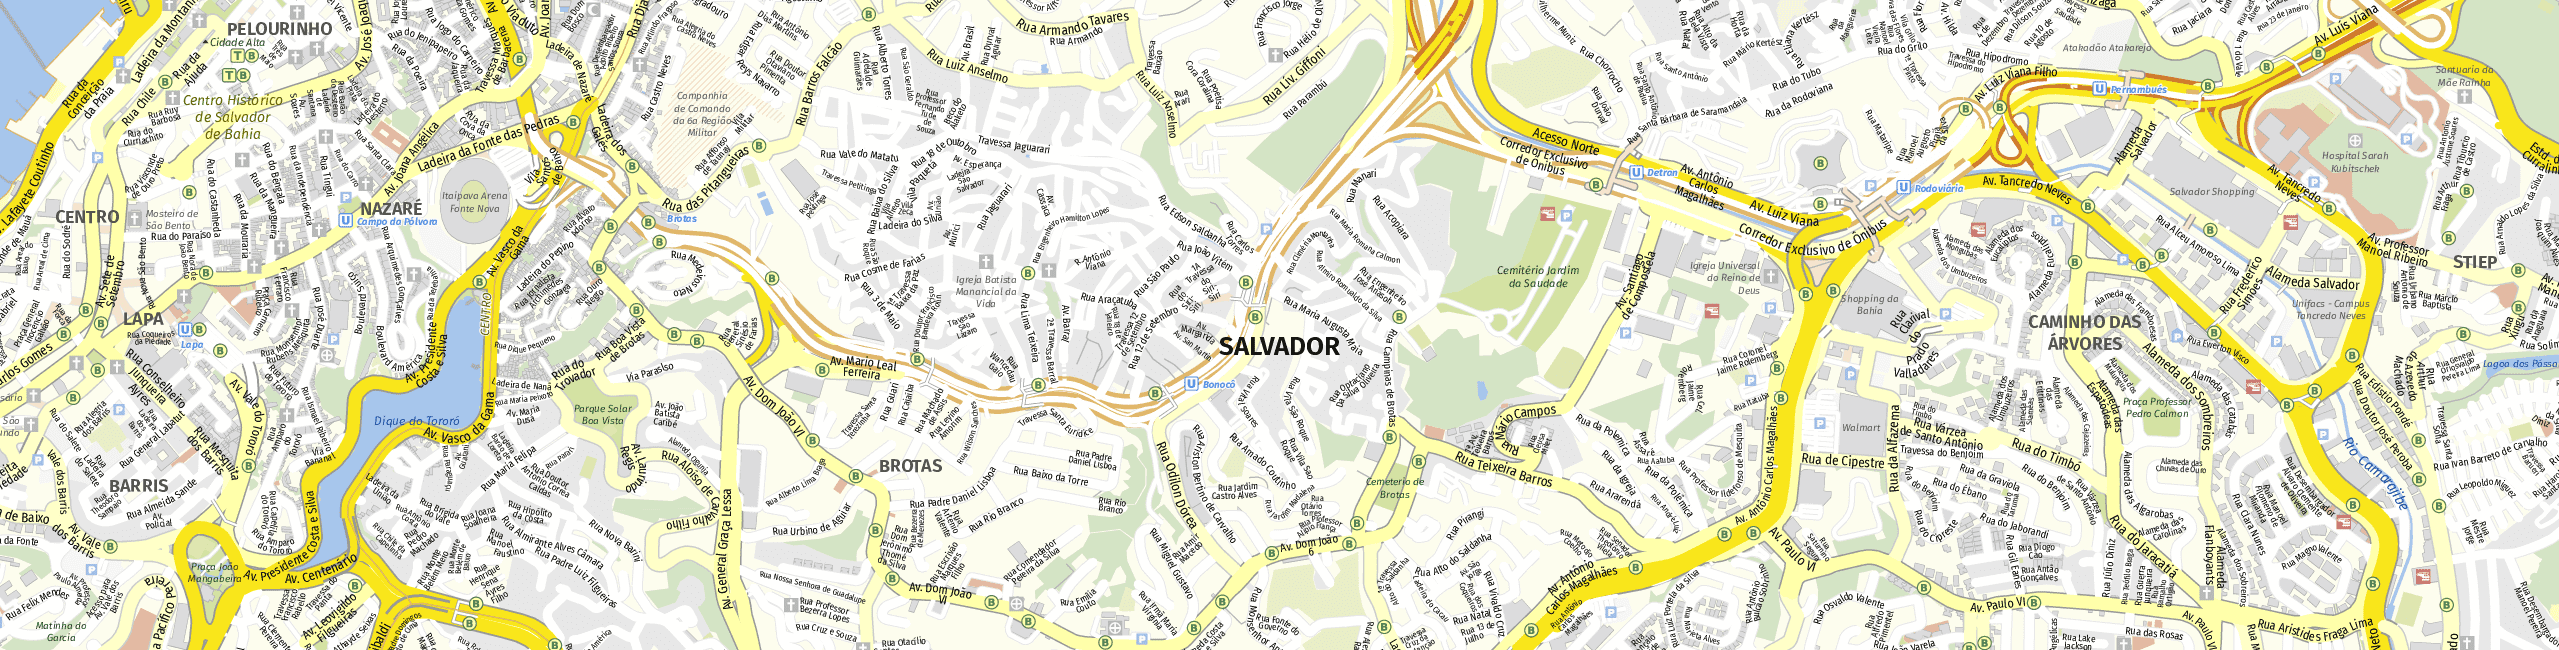 Stadtplan Salvador zum Downloaden.